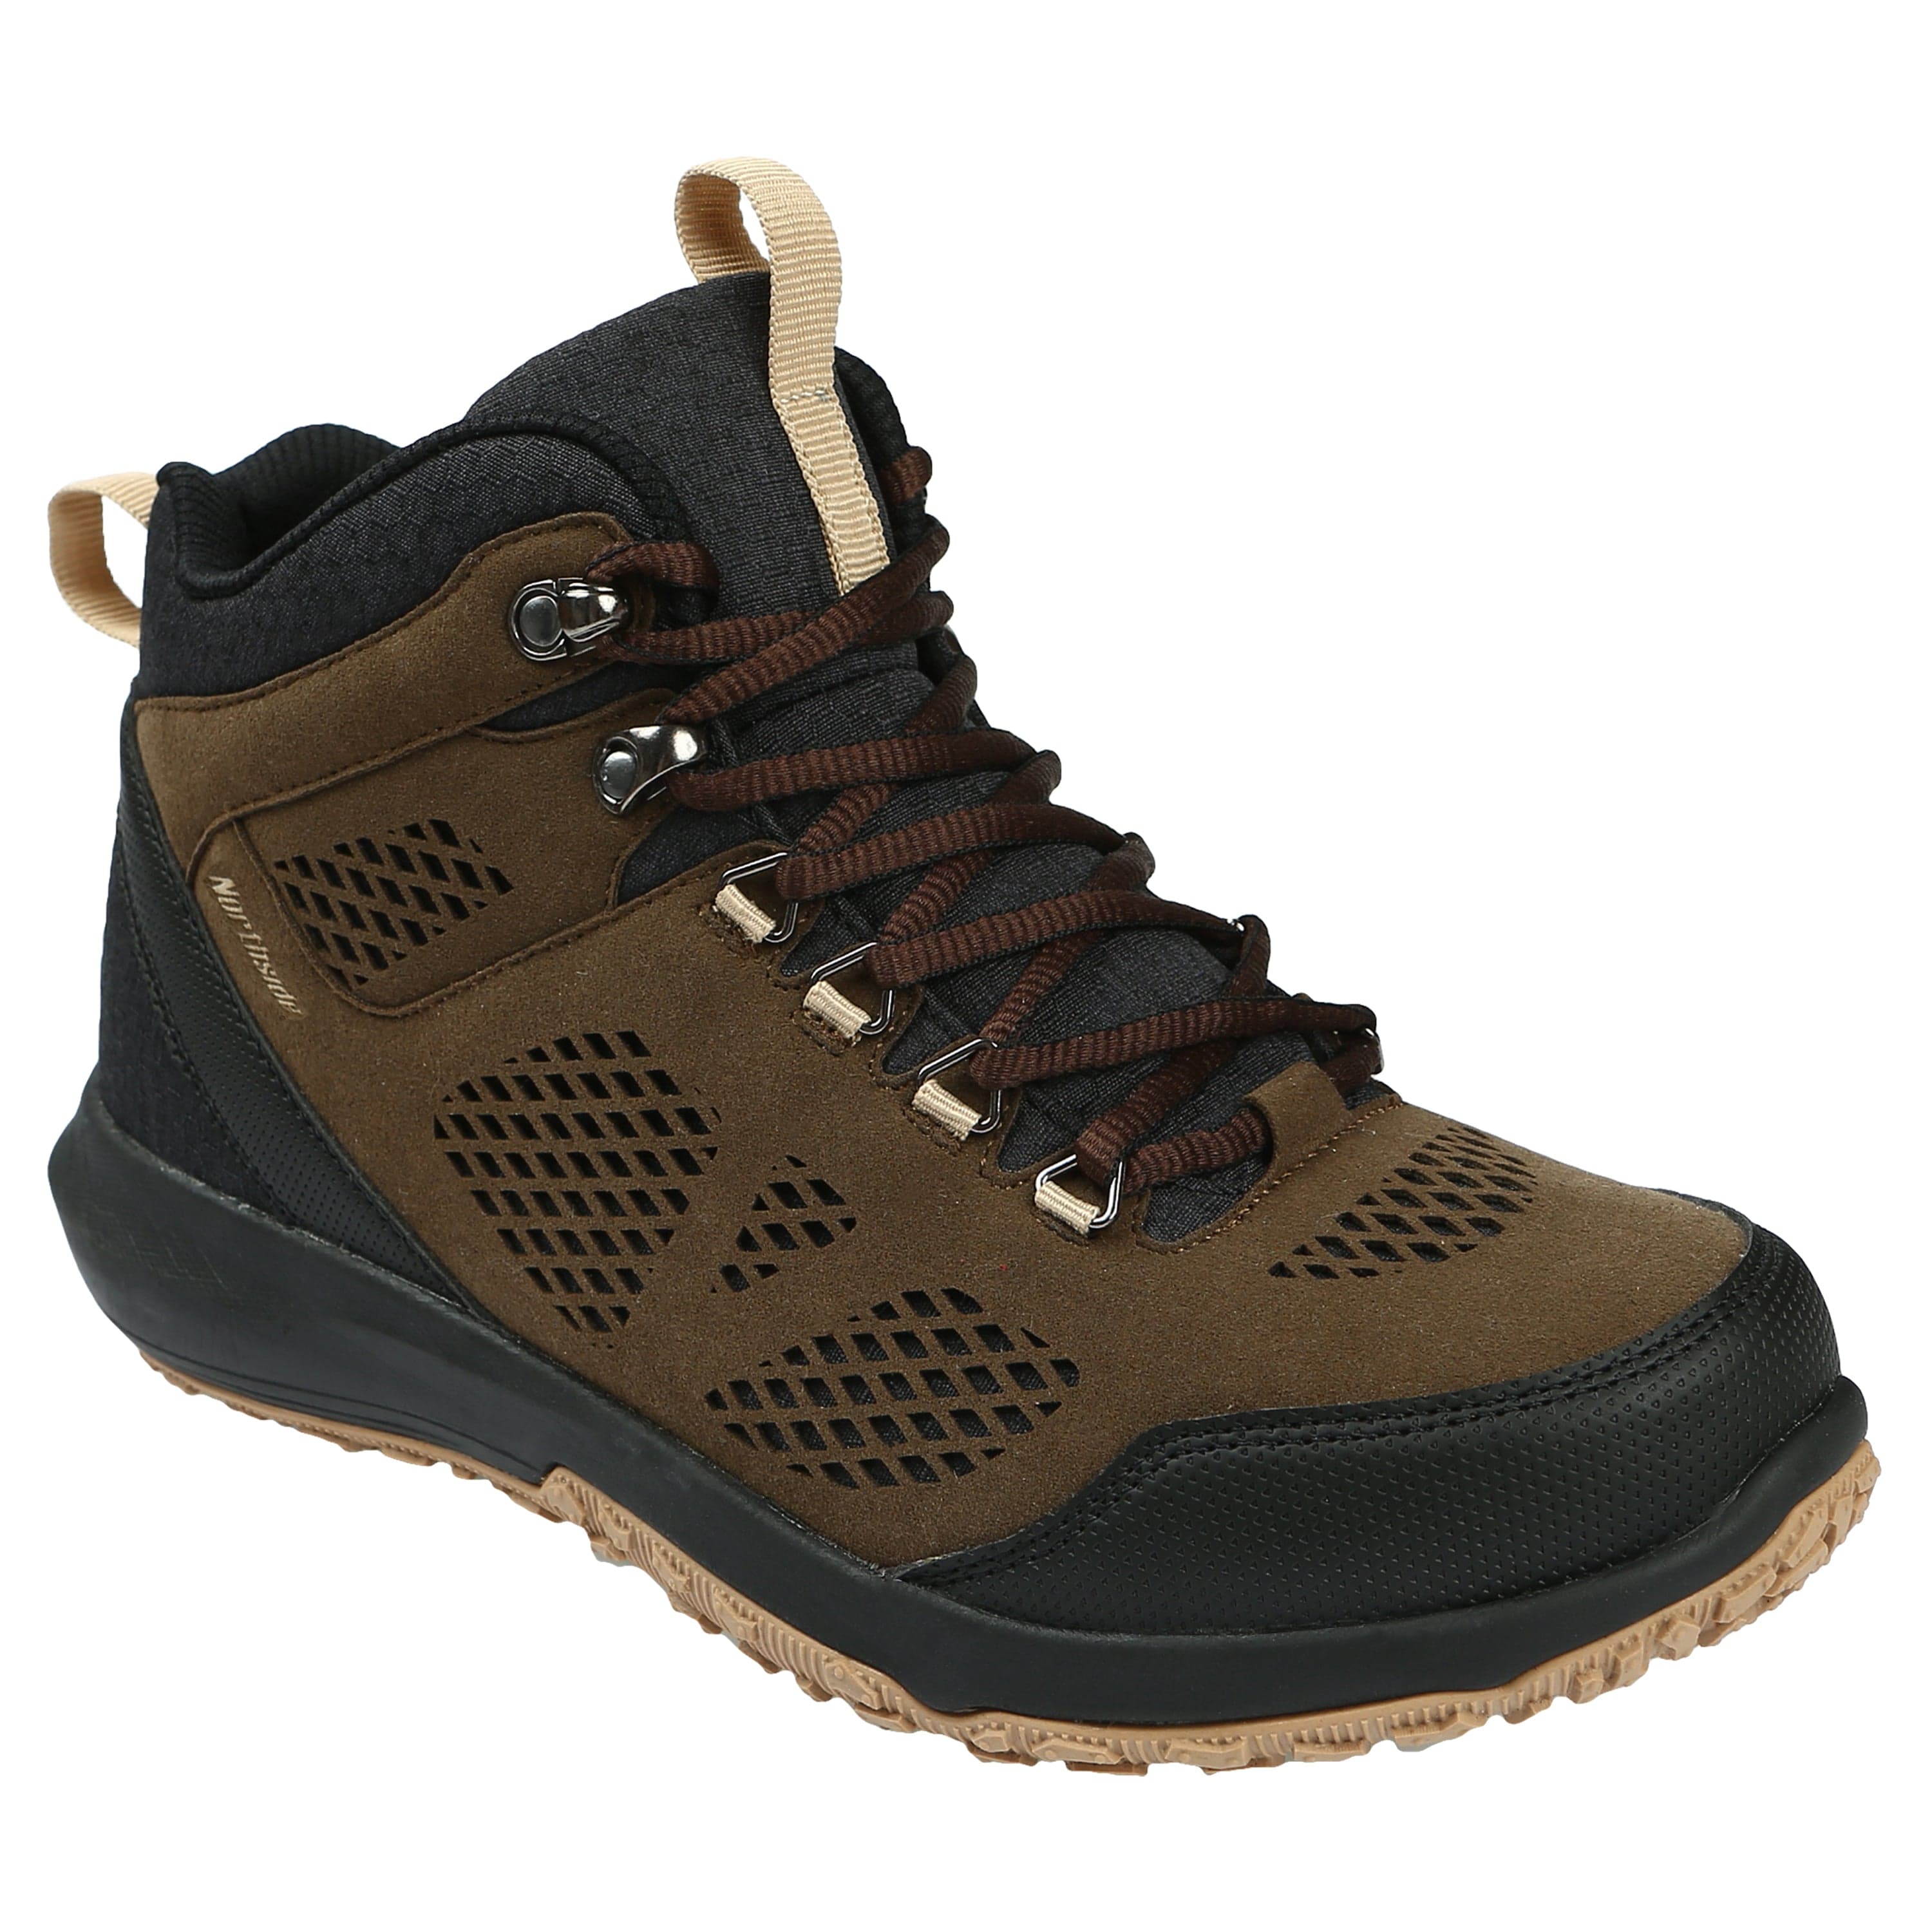 Men's Benton Mid Waterproof Hiking Boot - Northside USA